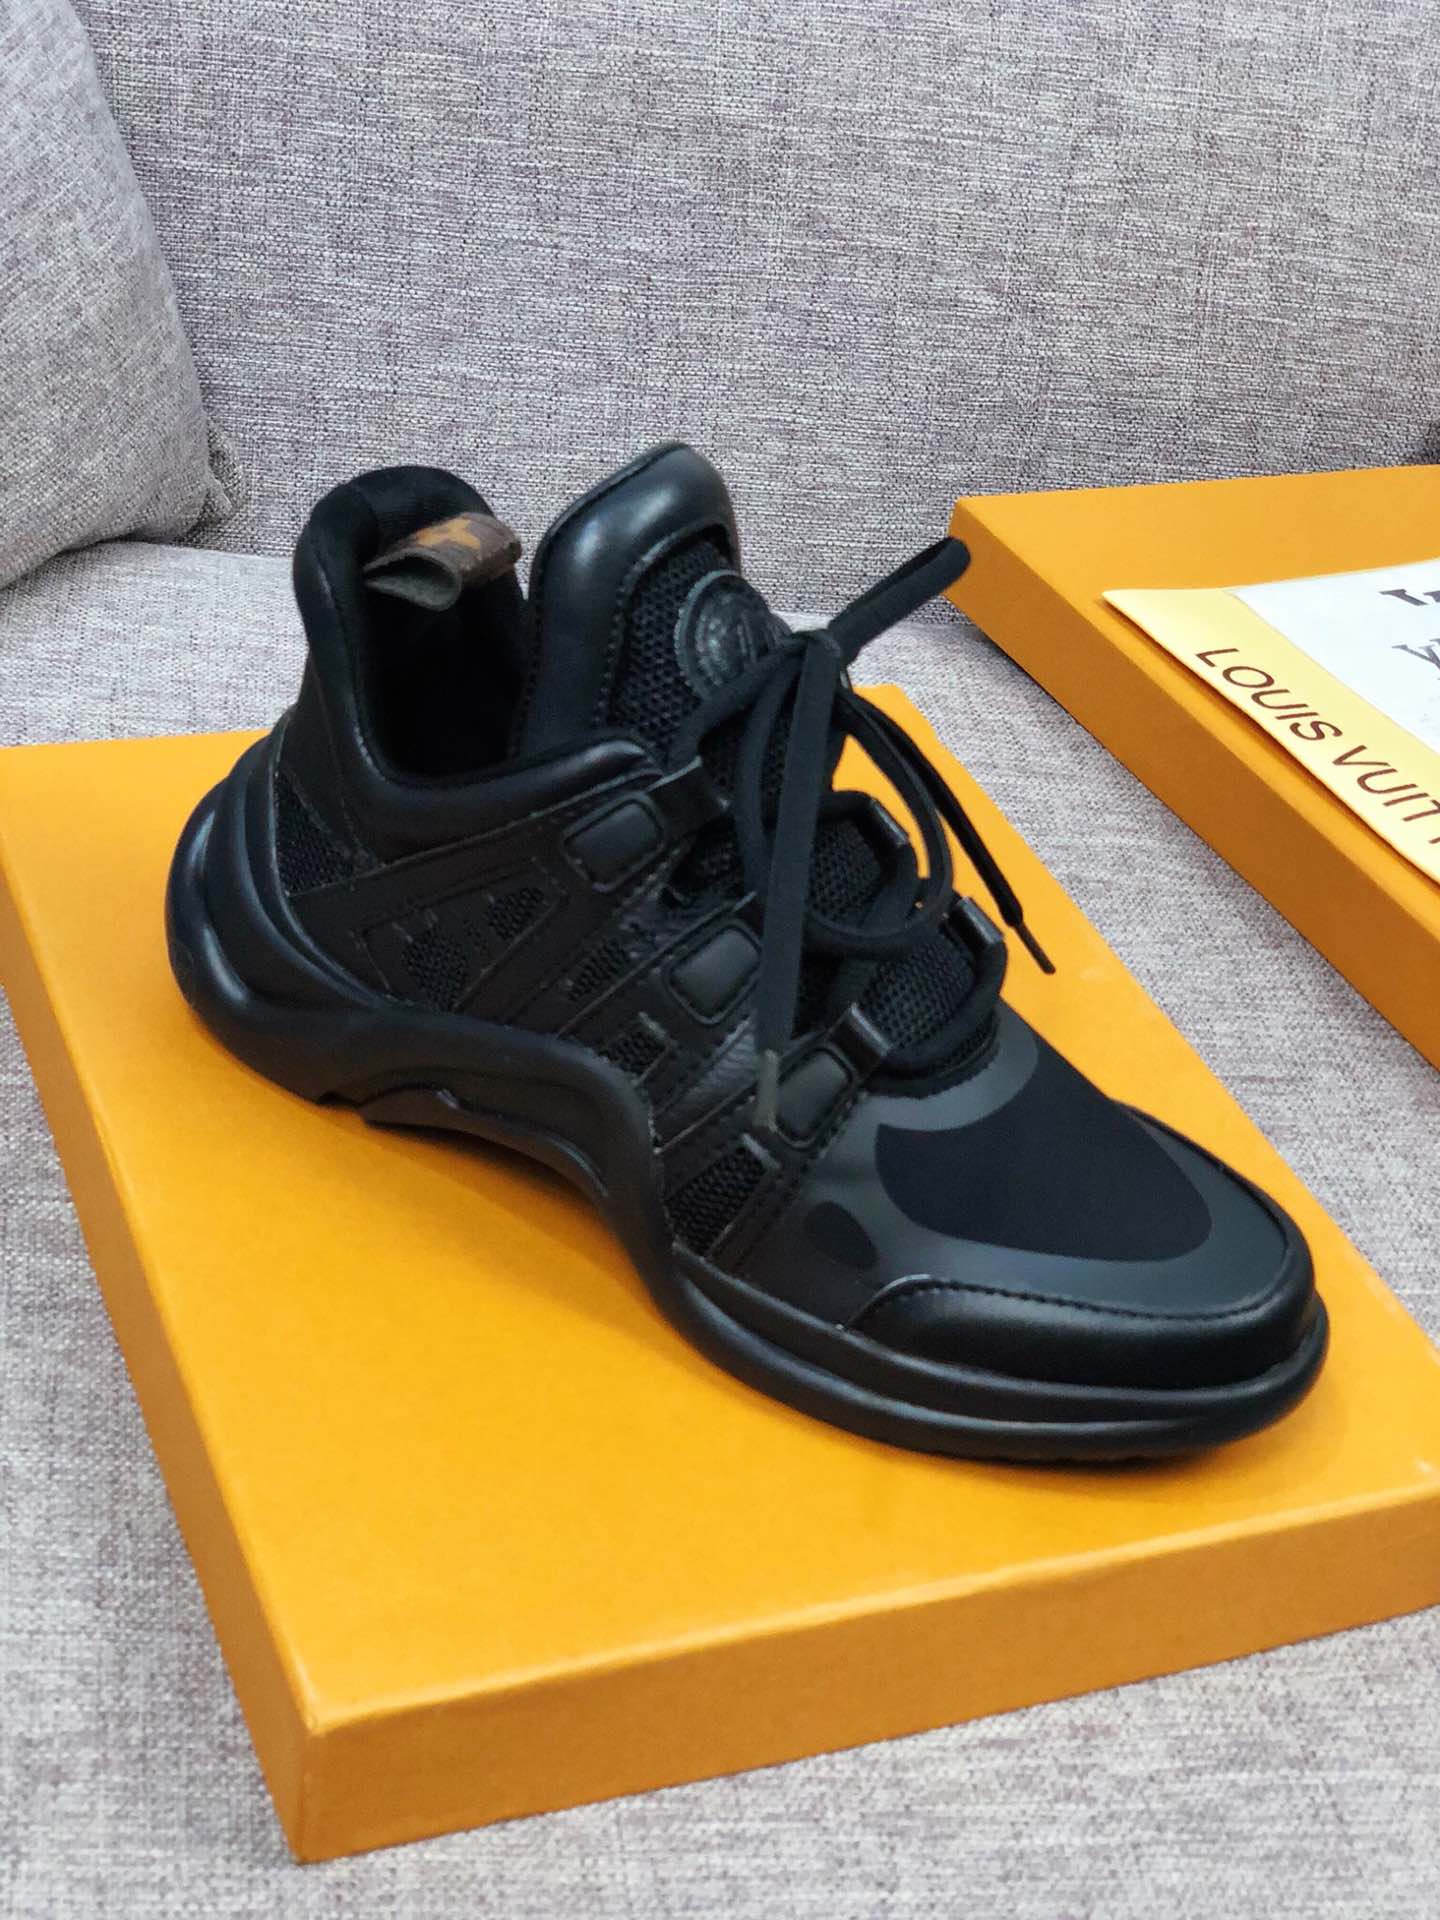 EI -LUV Archlight Full Black Sneaker